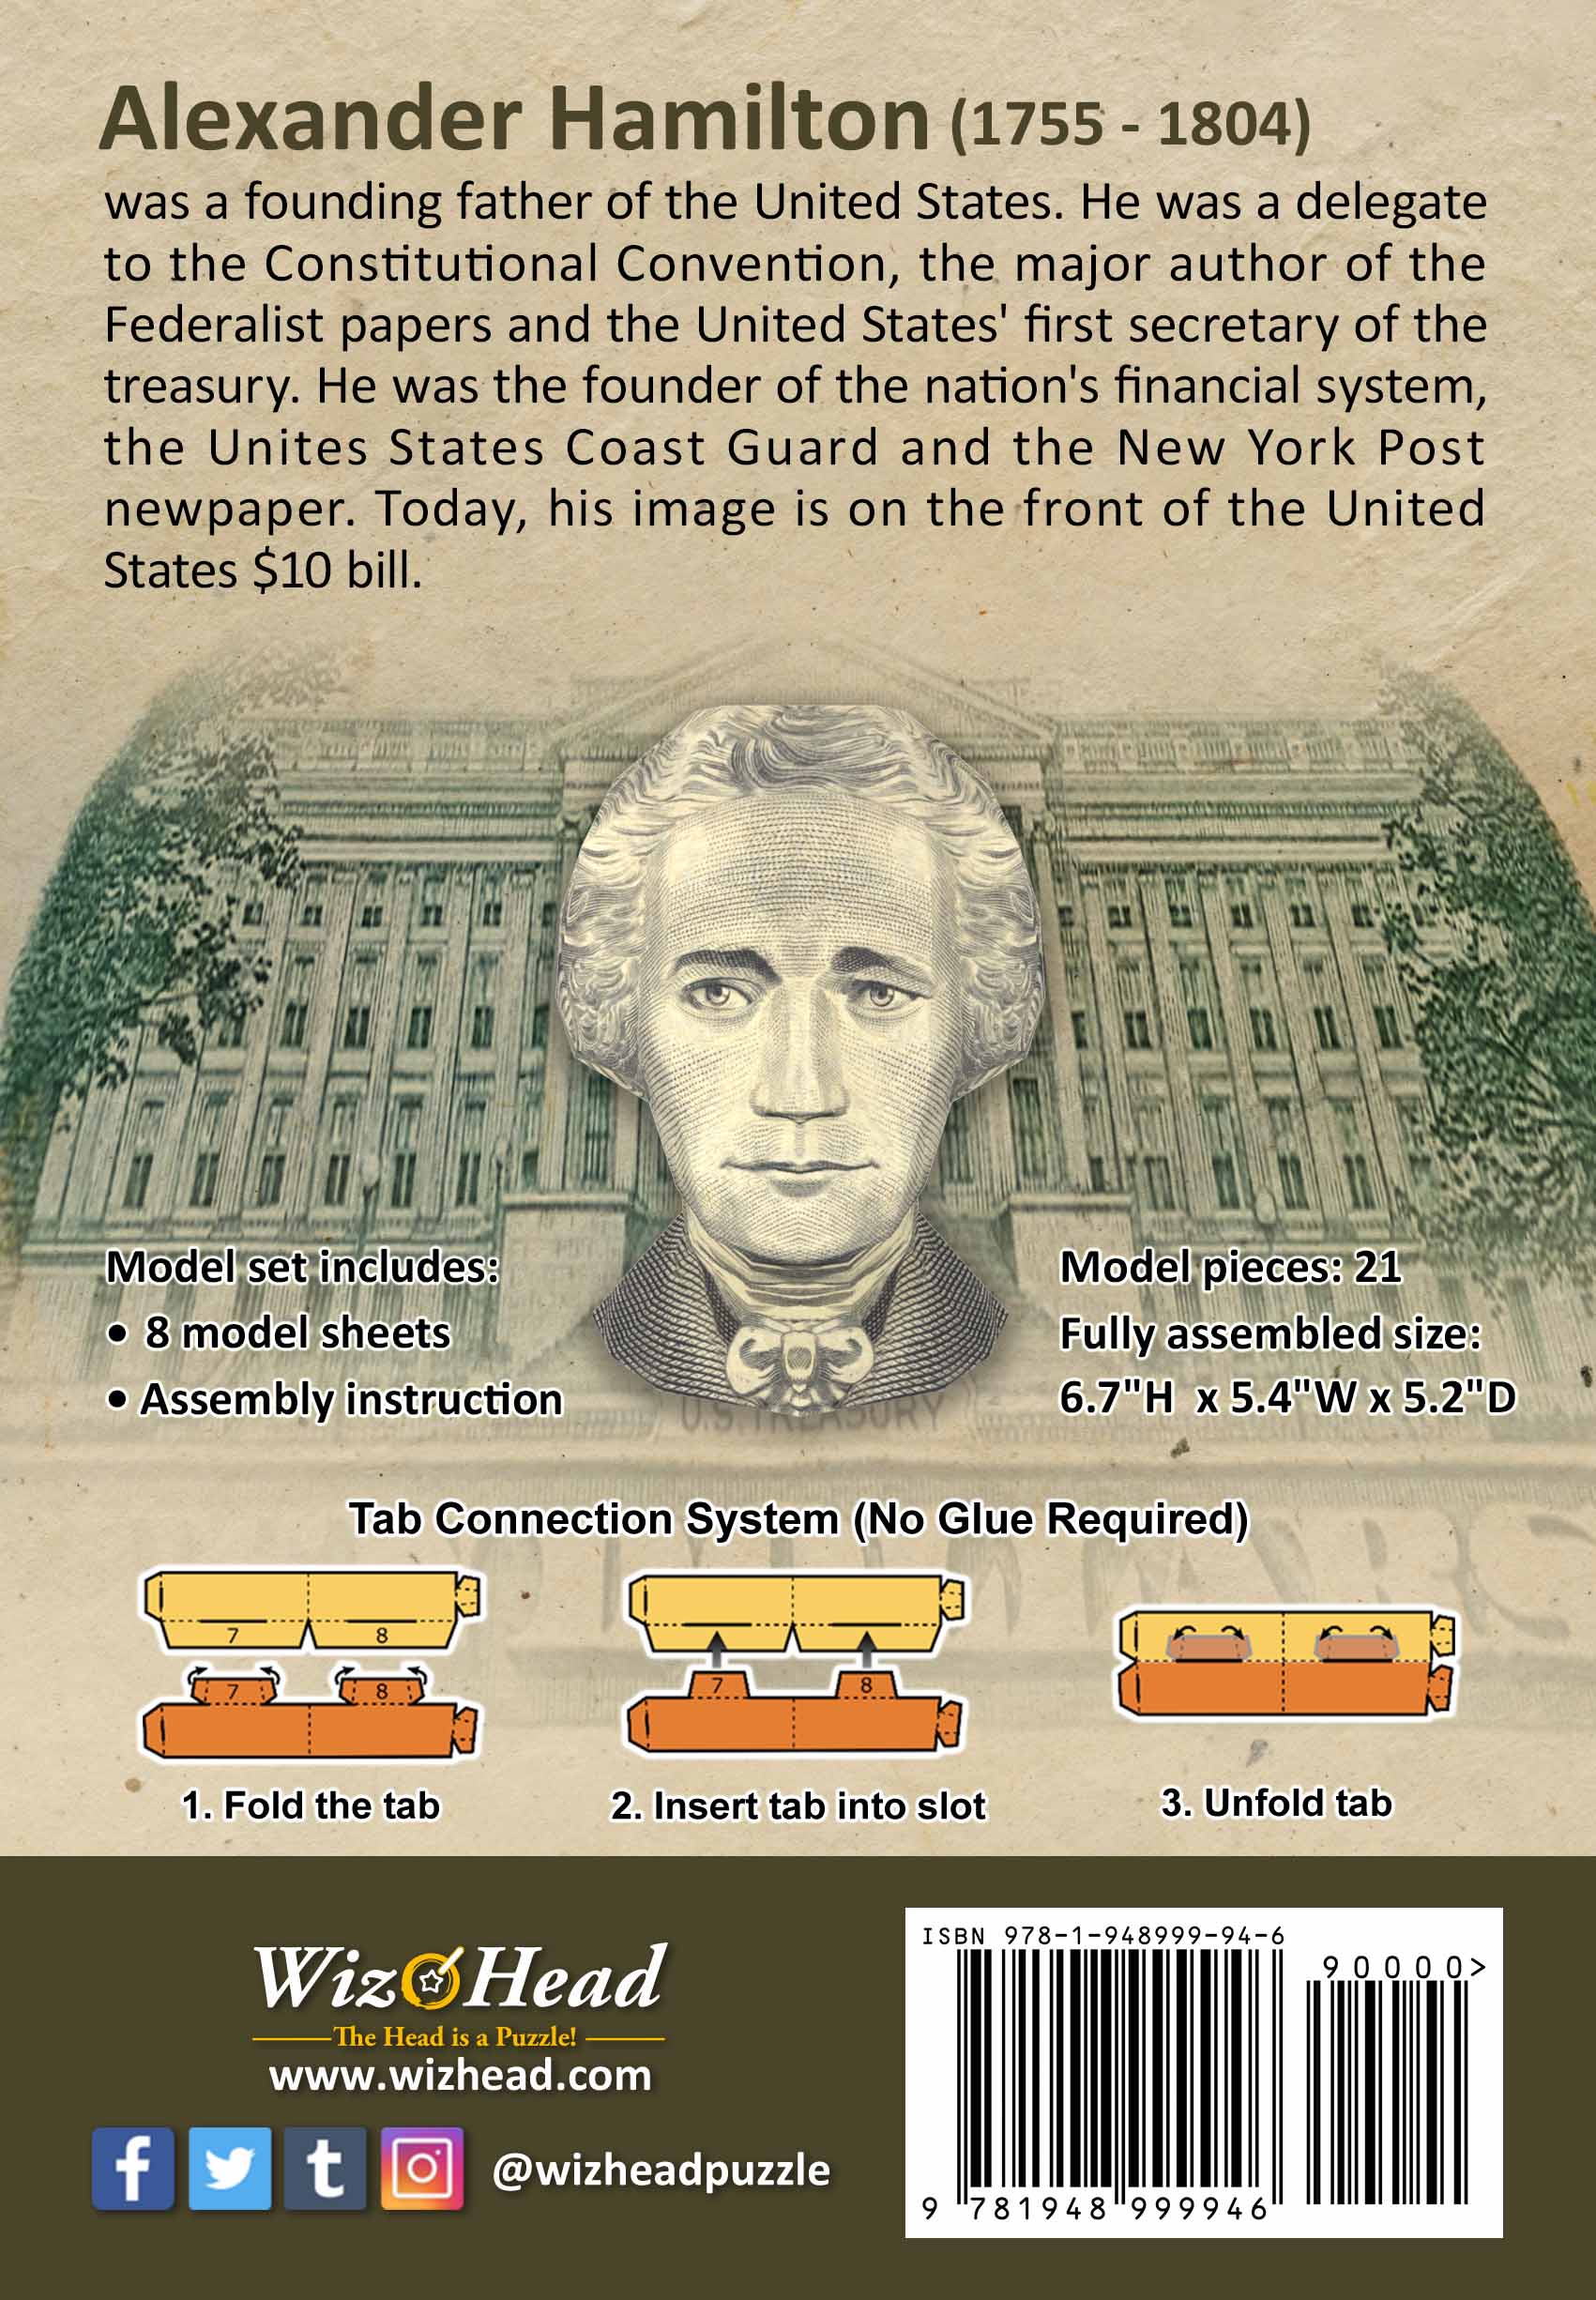 US $10 Bill- Alexander Hamilton (Full Size)